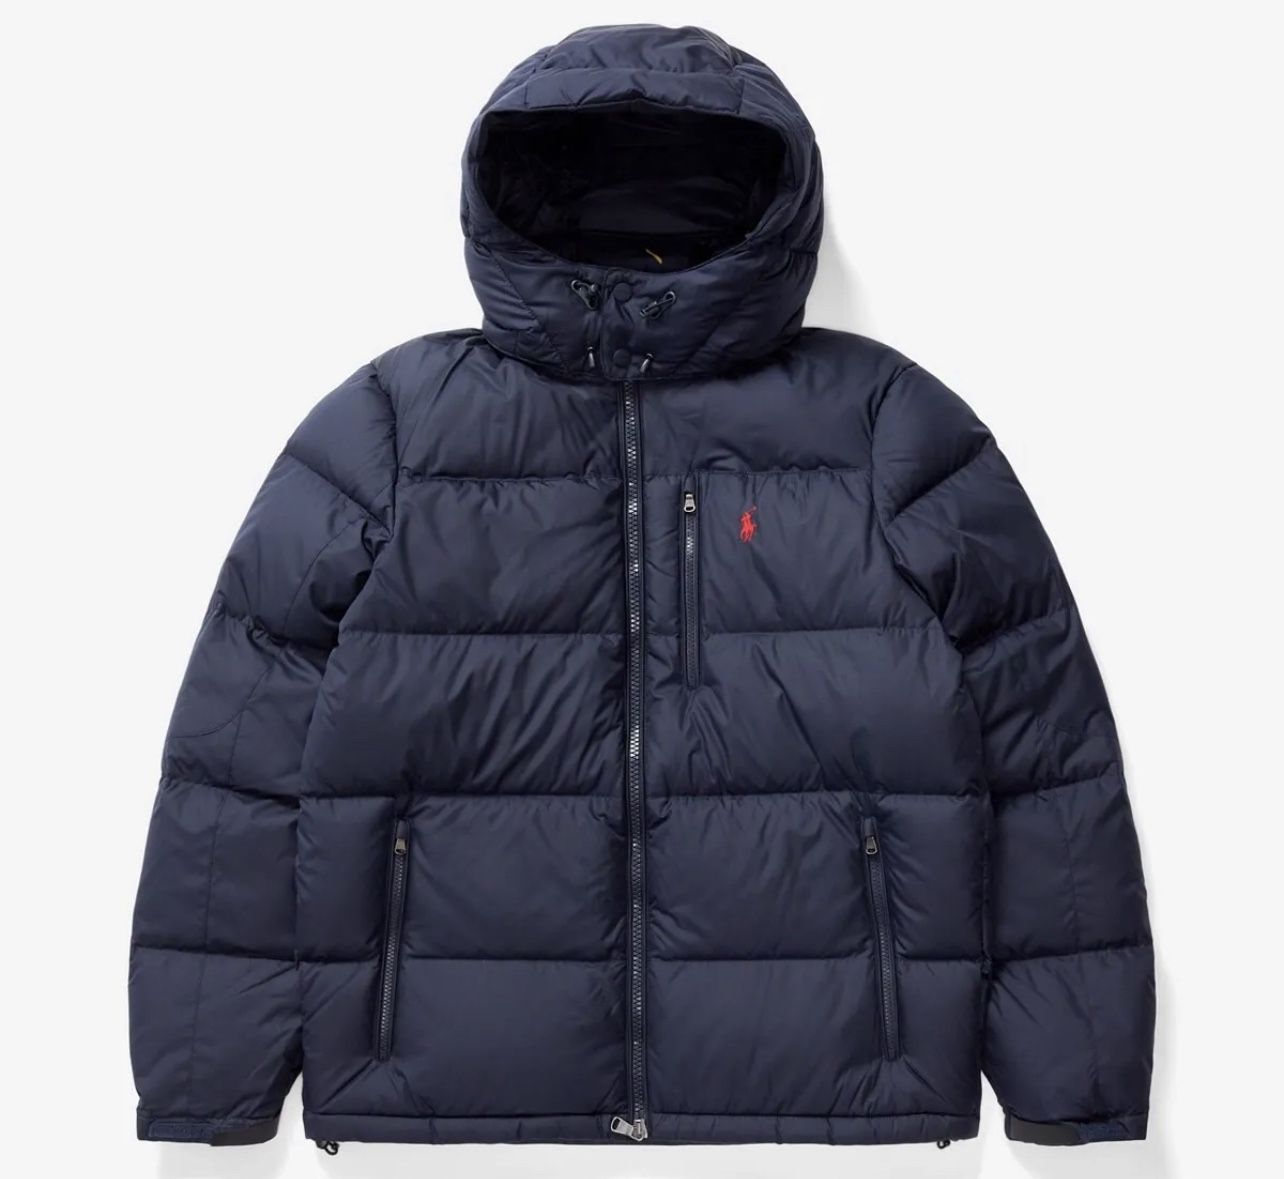 Polo Ralph Lauren Navy Down Fill Puffer Jacket Men's Size XXL $348 MSRP NEW